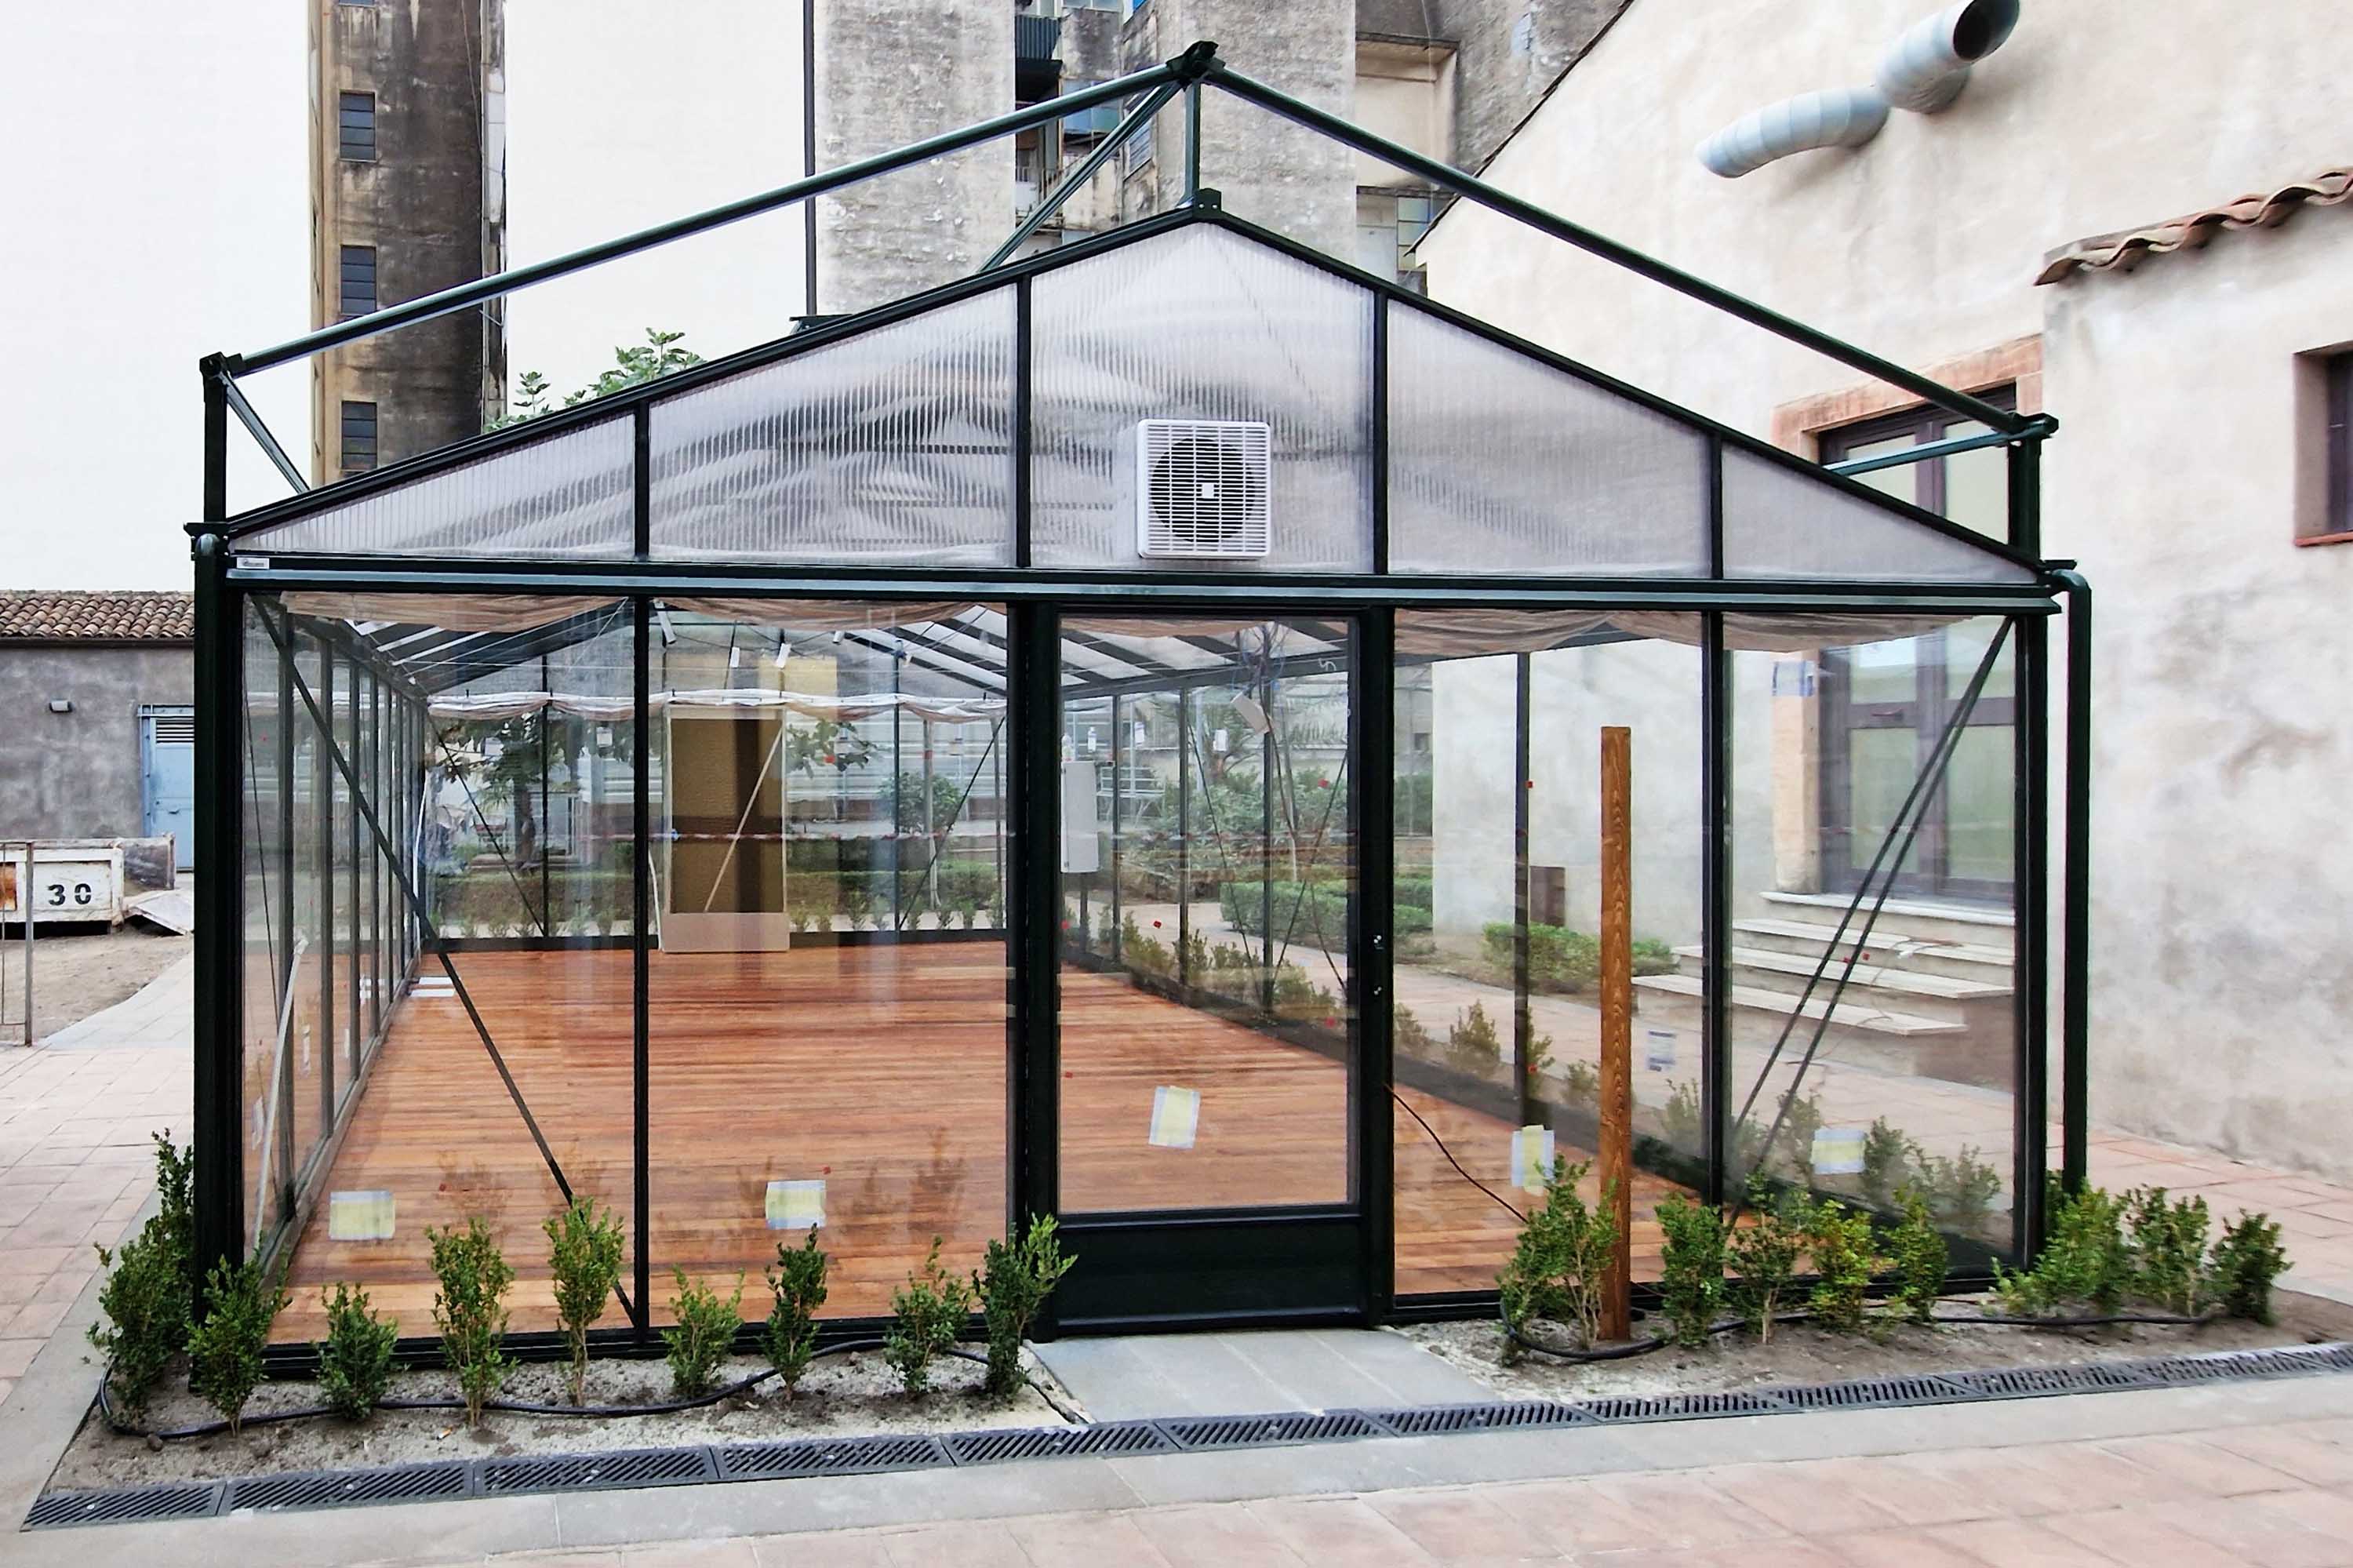 La serra di propagazione realizzata all'interno della struttura ex Conservatorio delle Vergini al Borgo